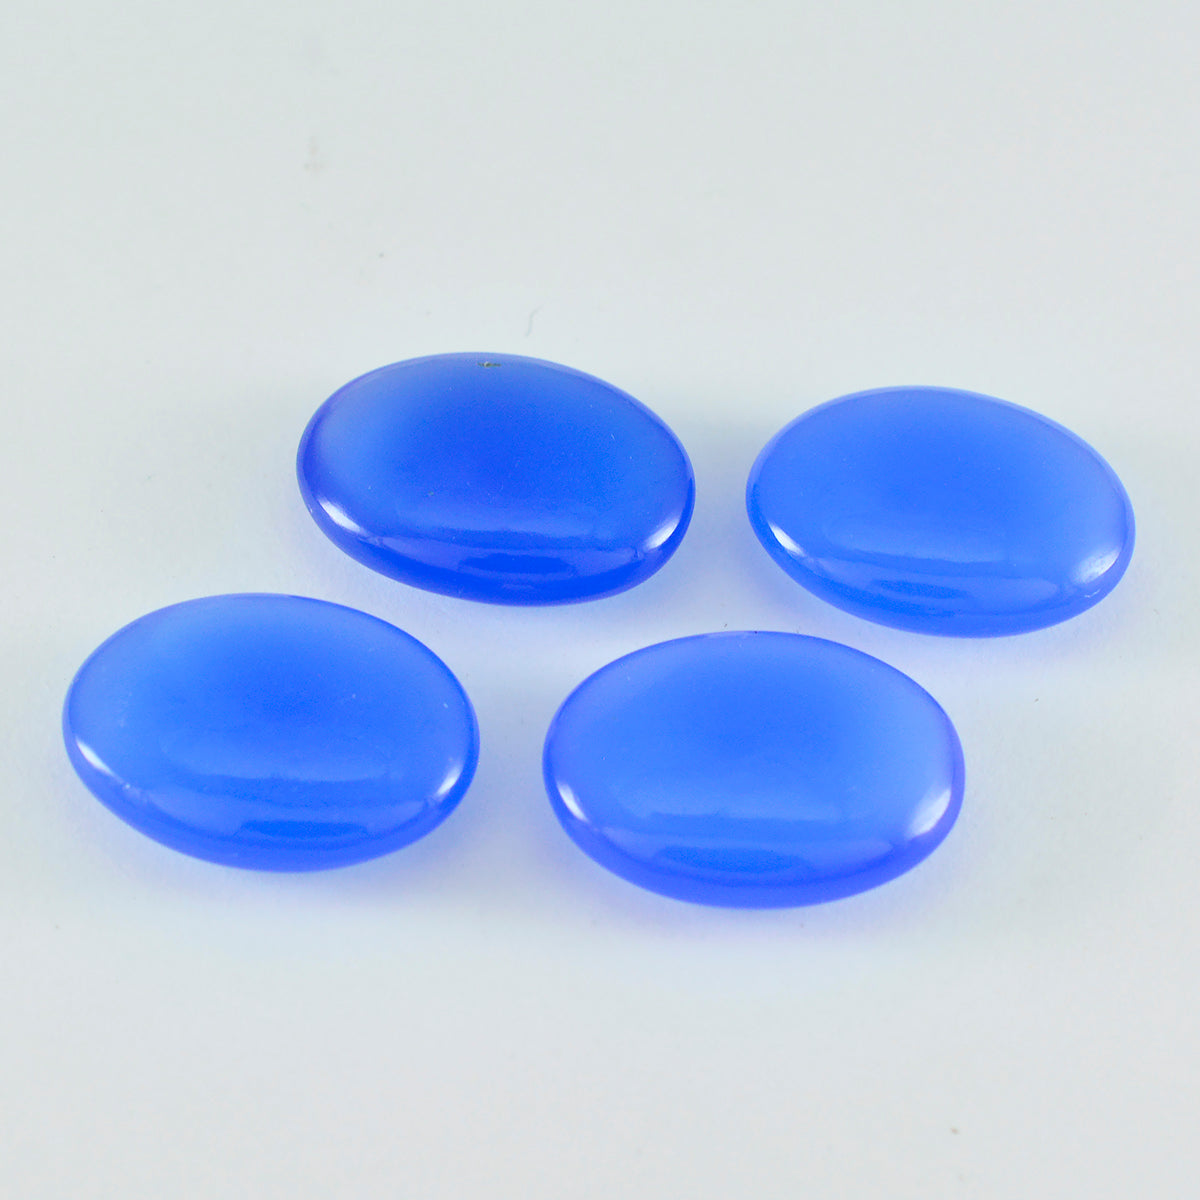 riyogems 1pc cabochon calcédoine bleue 12x16 mm forme ovale pierre de qualité mignonne